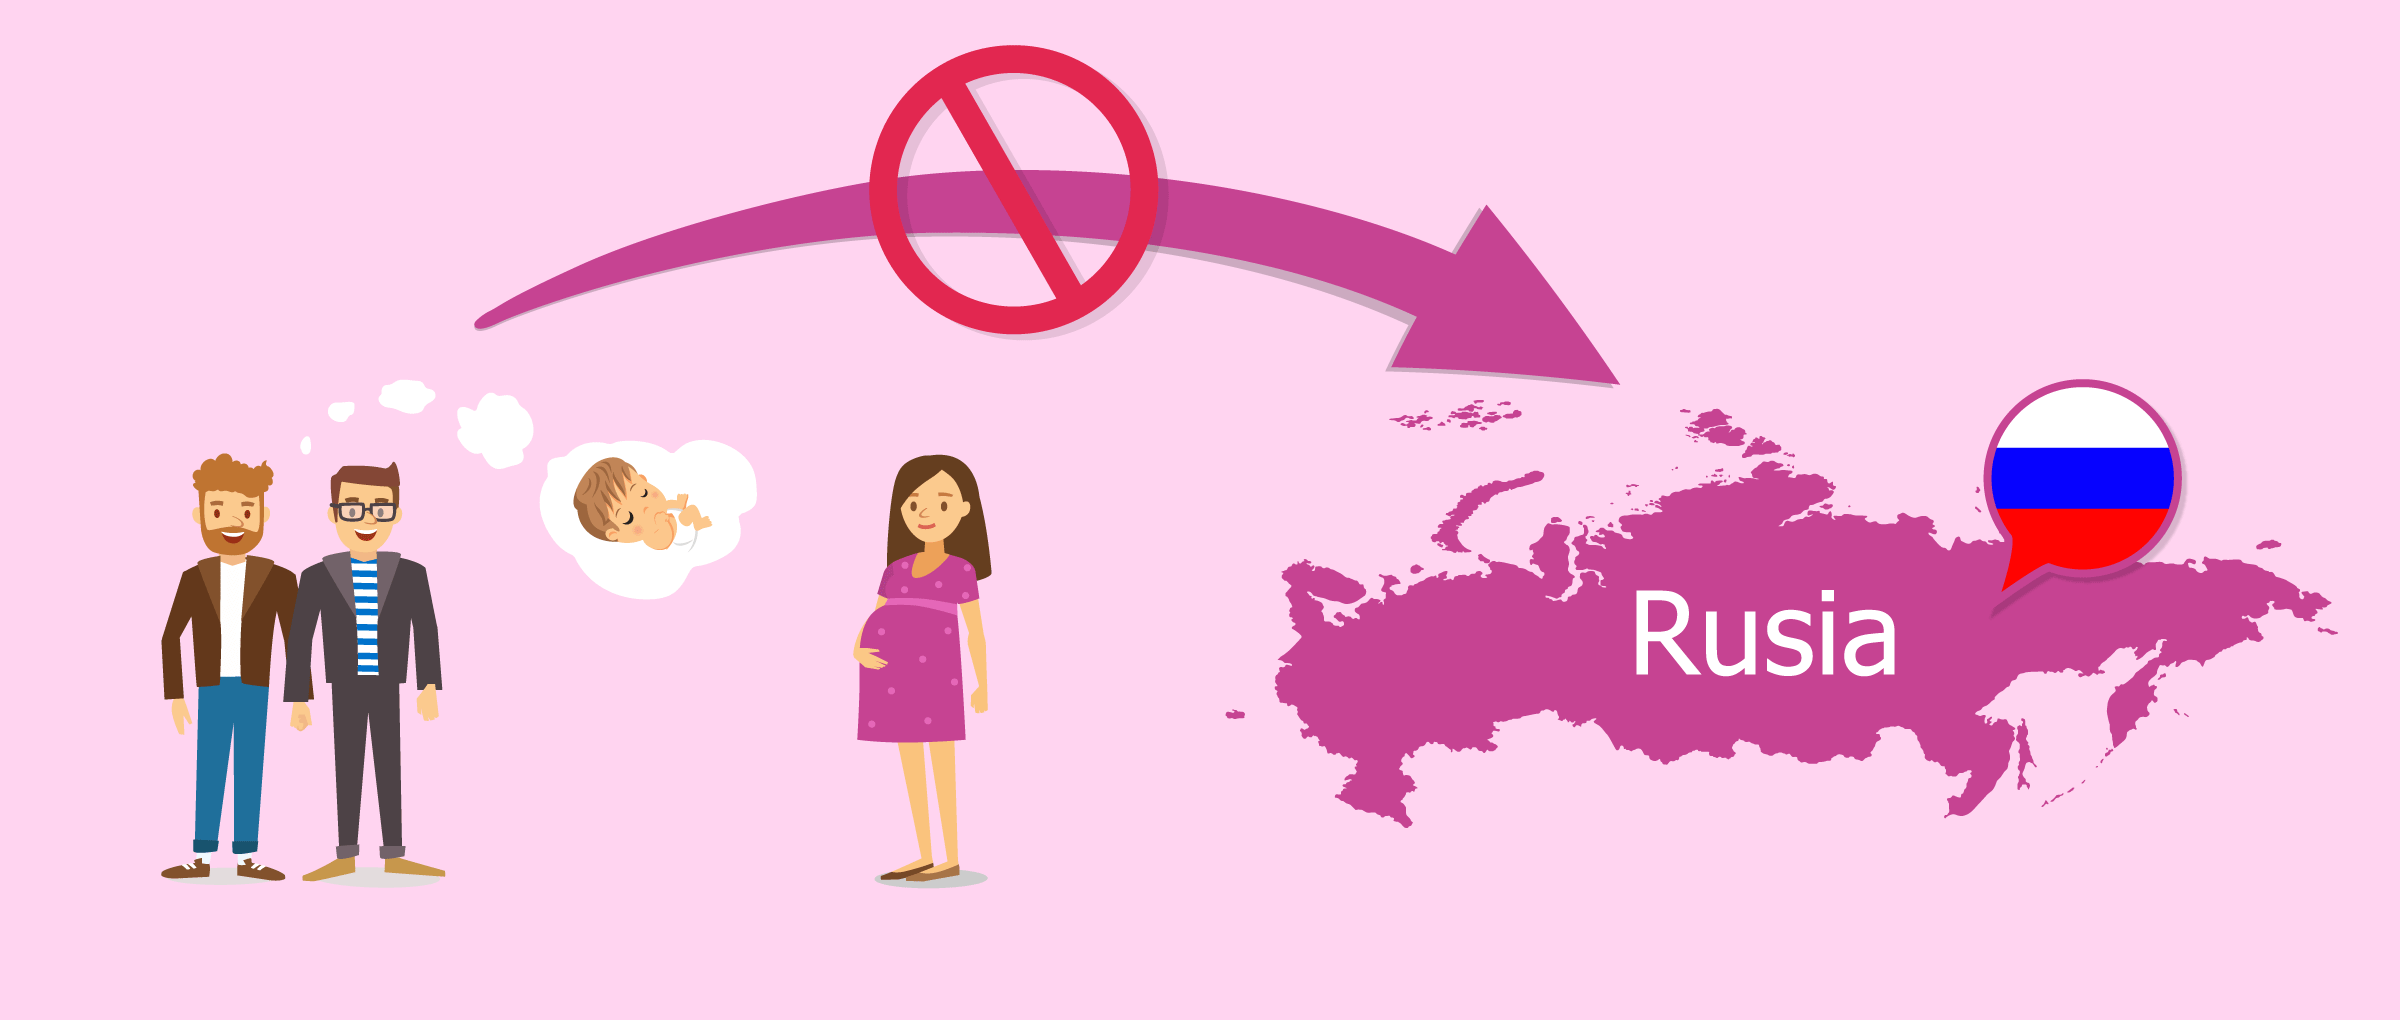 Gestación subrogada para parejas homosexuales en Rusia